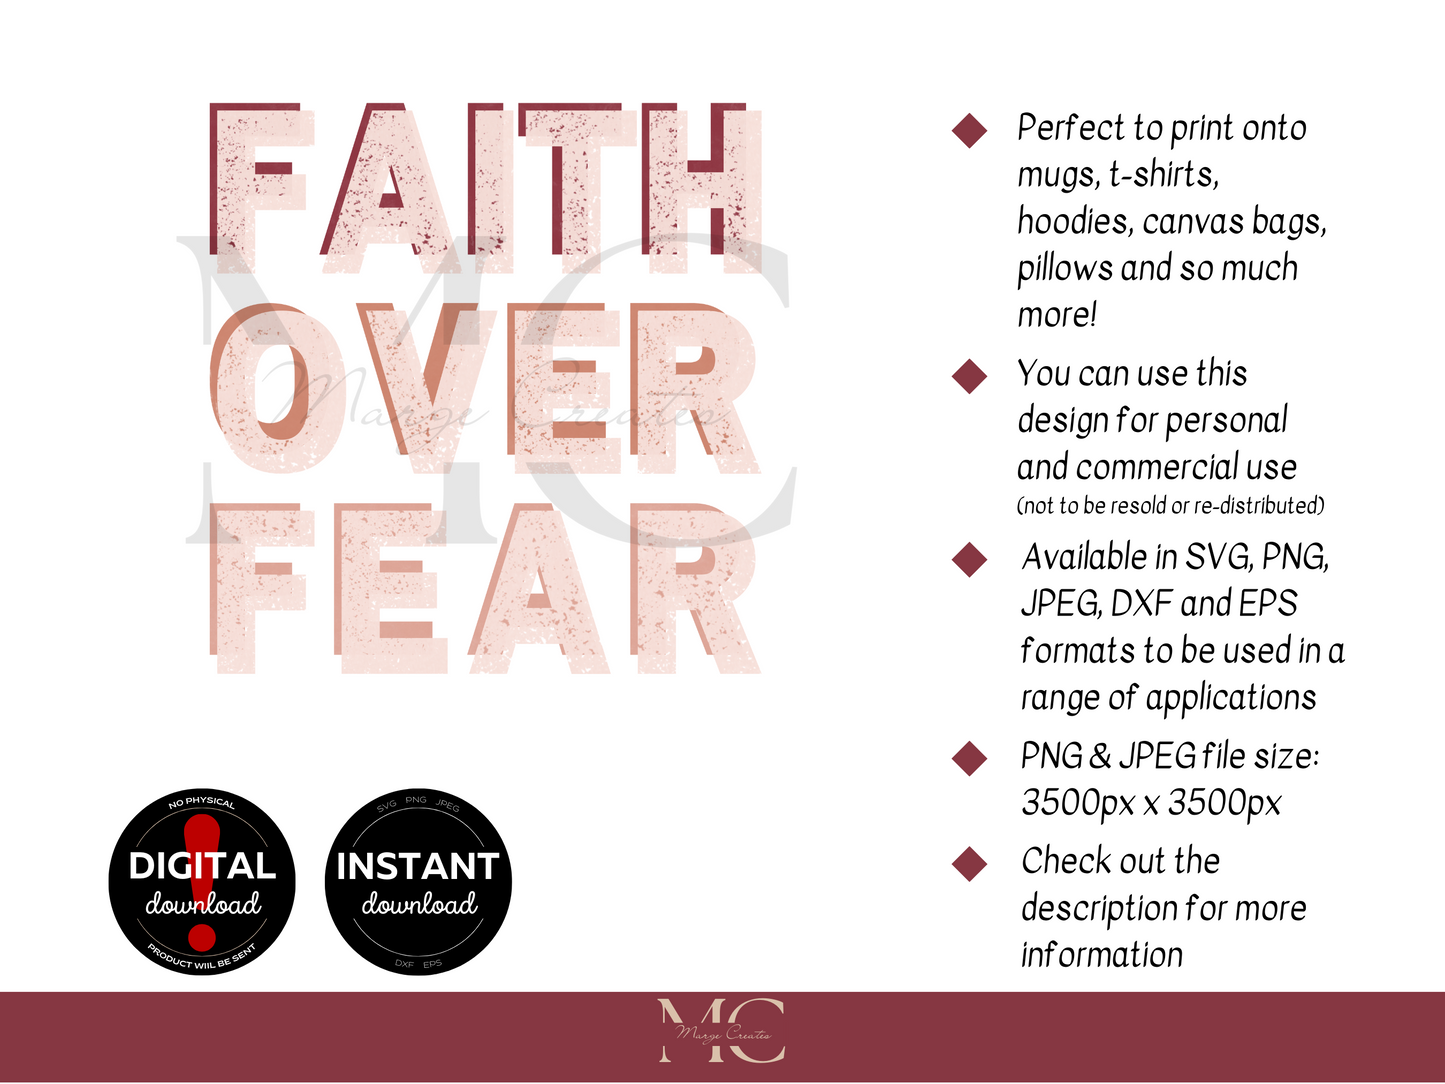 Faith Over Fear SVG PNG